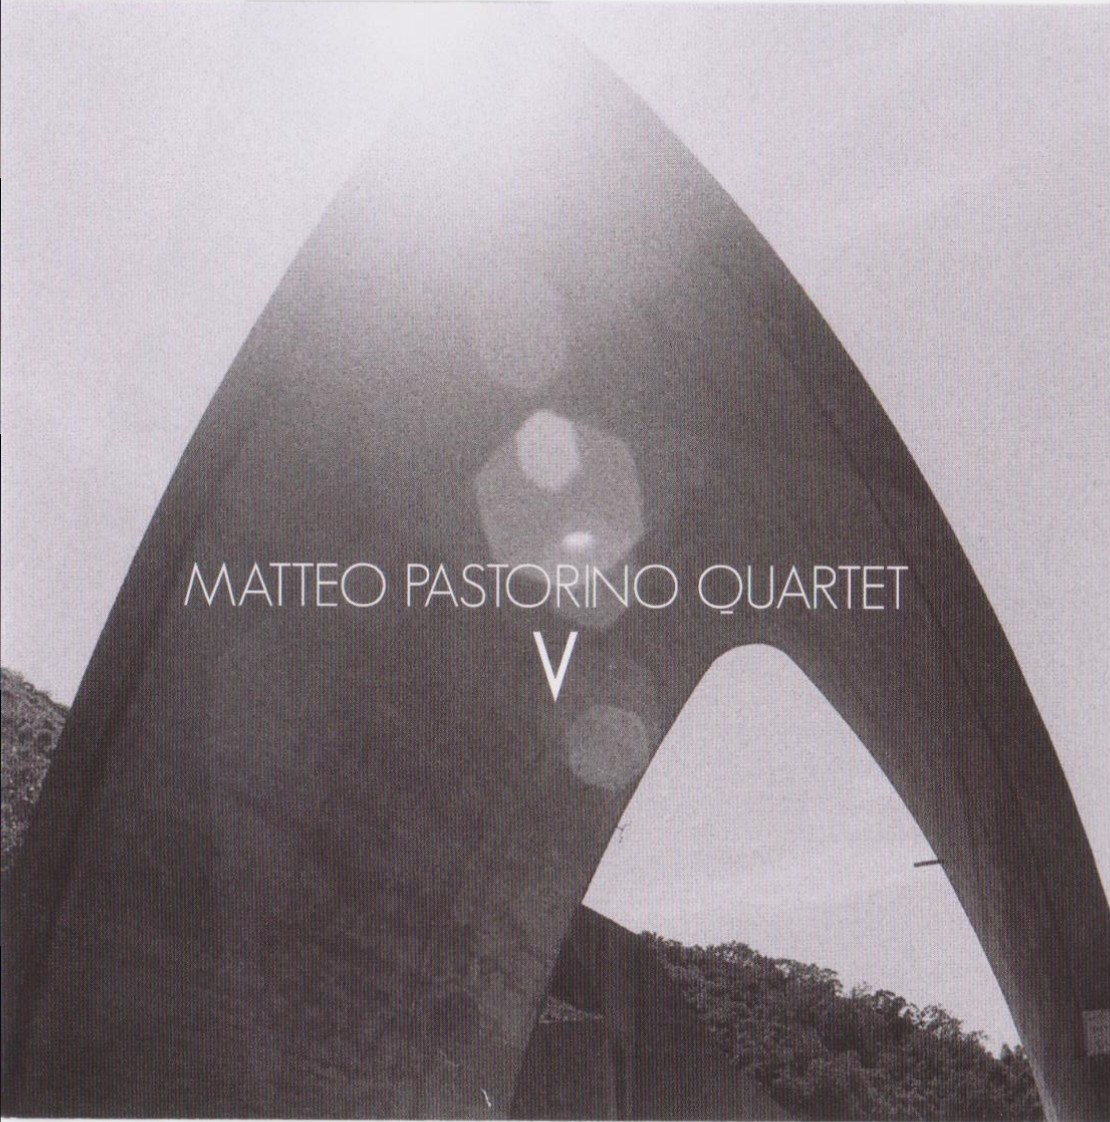 V, l’audace d’un clarinettiste dont le nom est Matteo Pastorino.